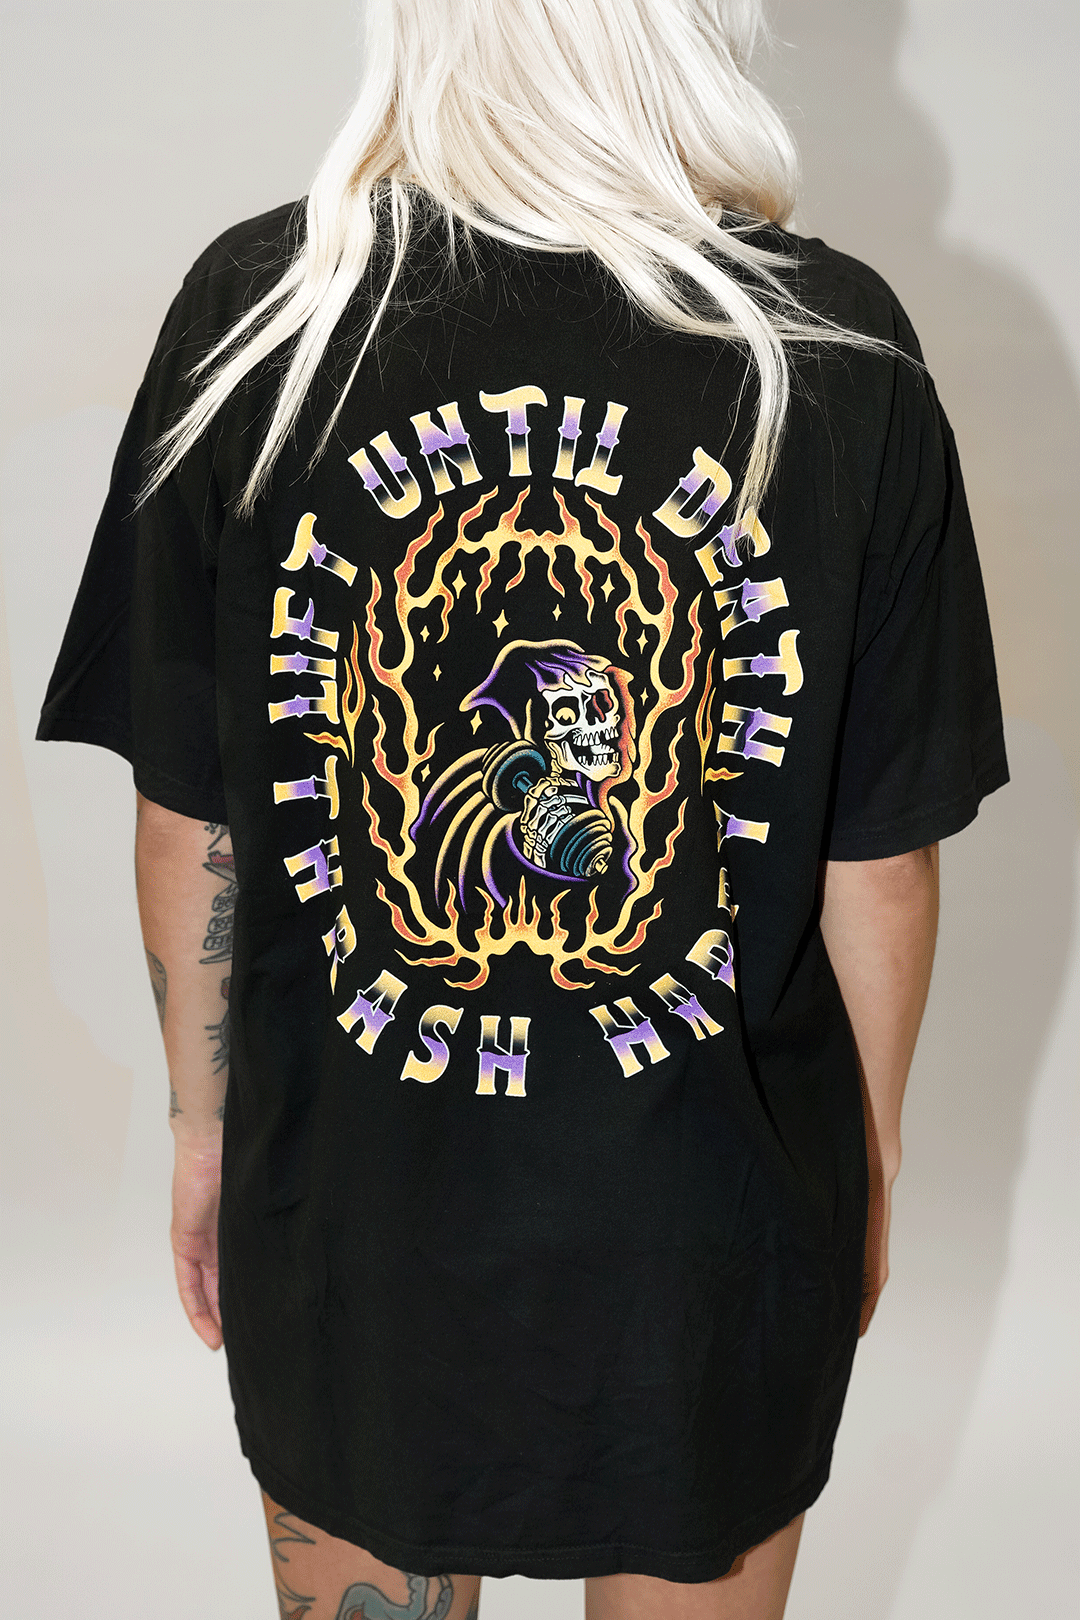 Lift Until Death T-Shirt